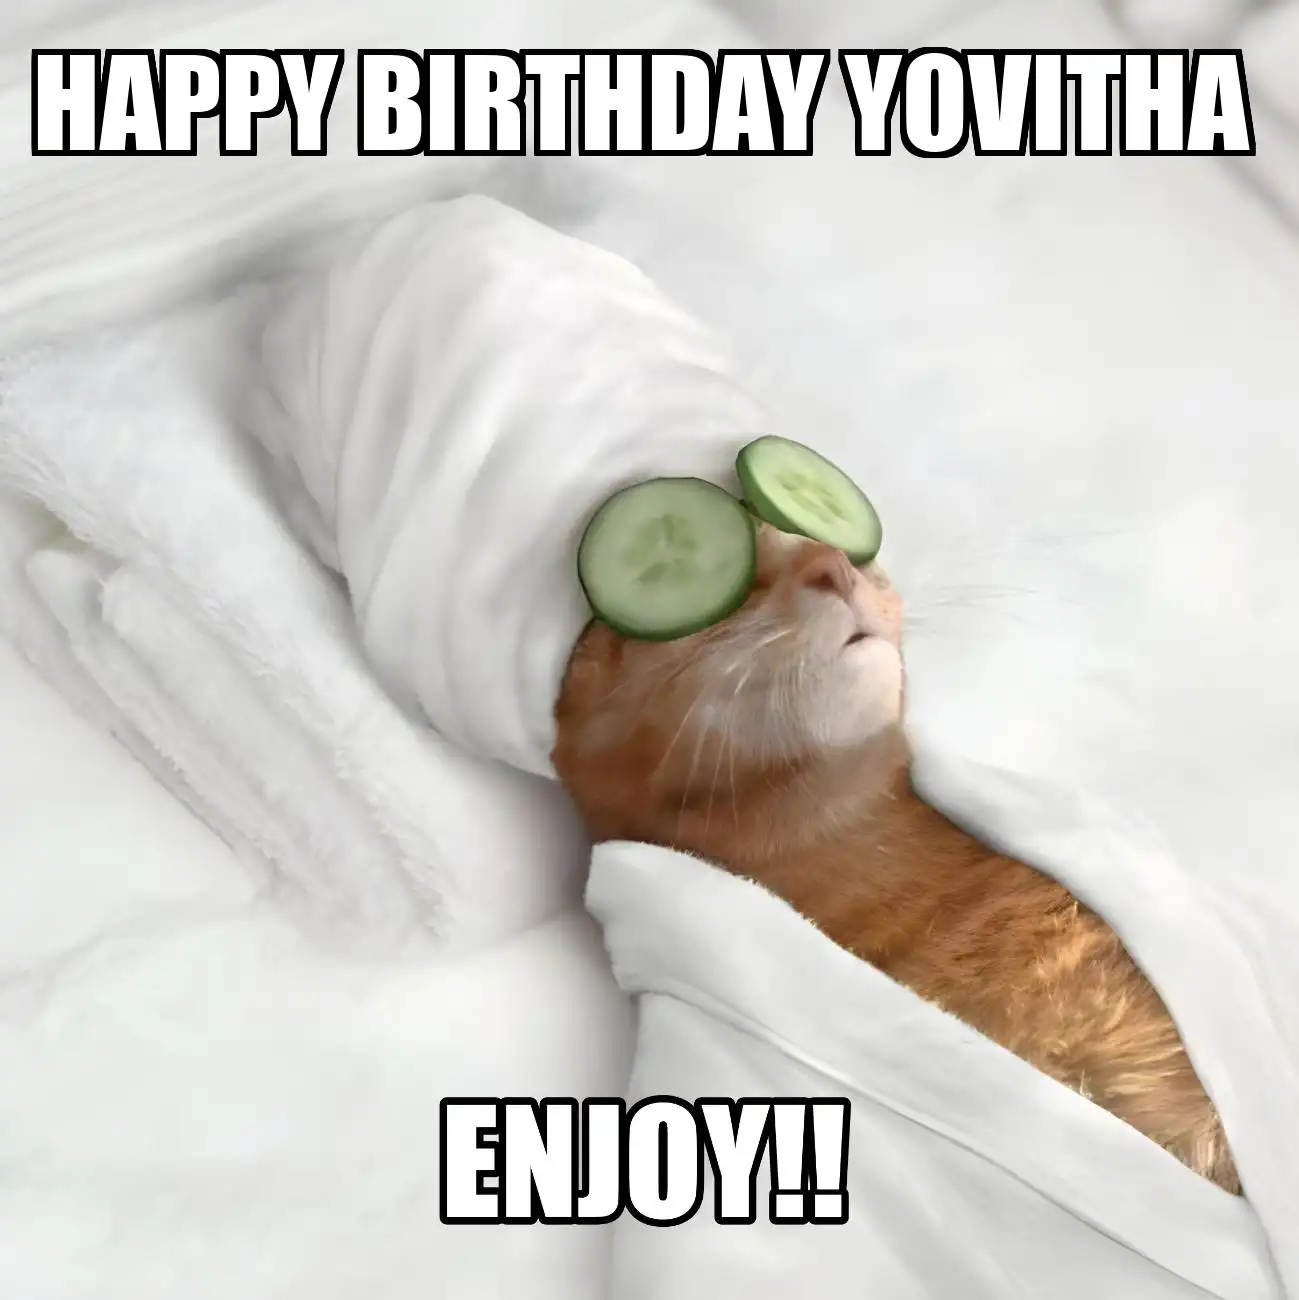 Happy Birthday Yovitha Enjoy Cat Meme